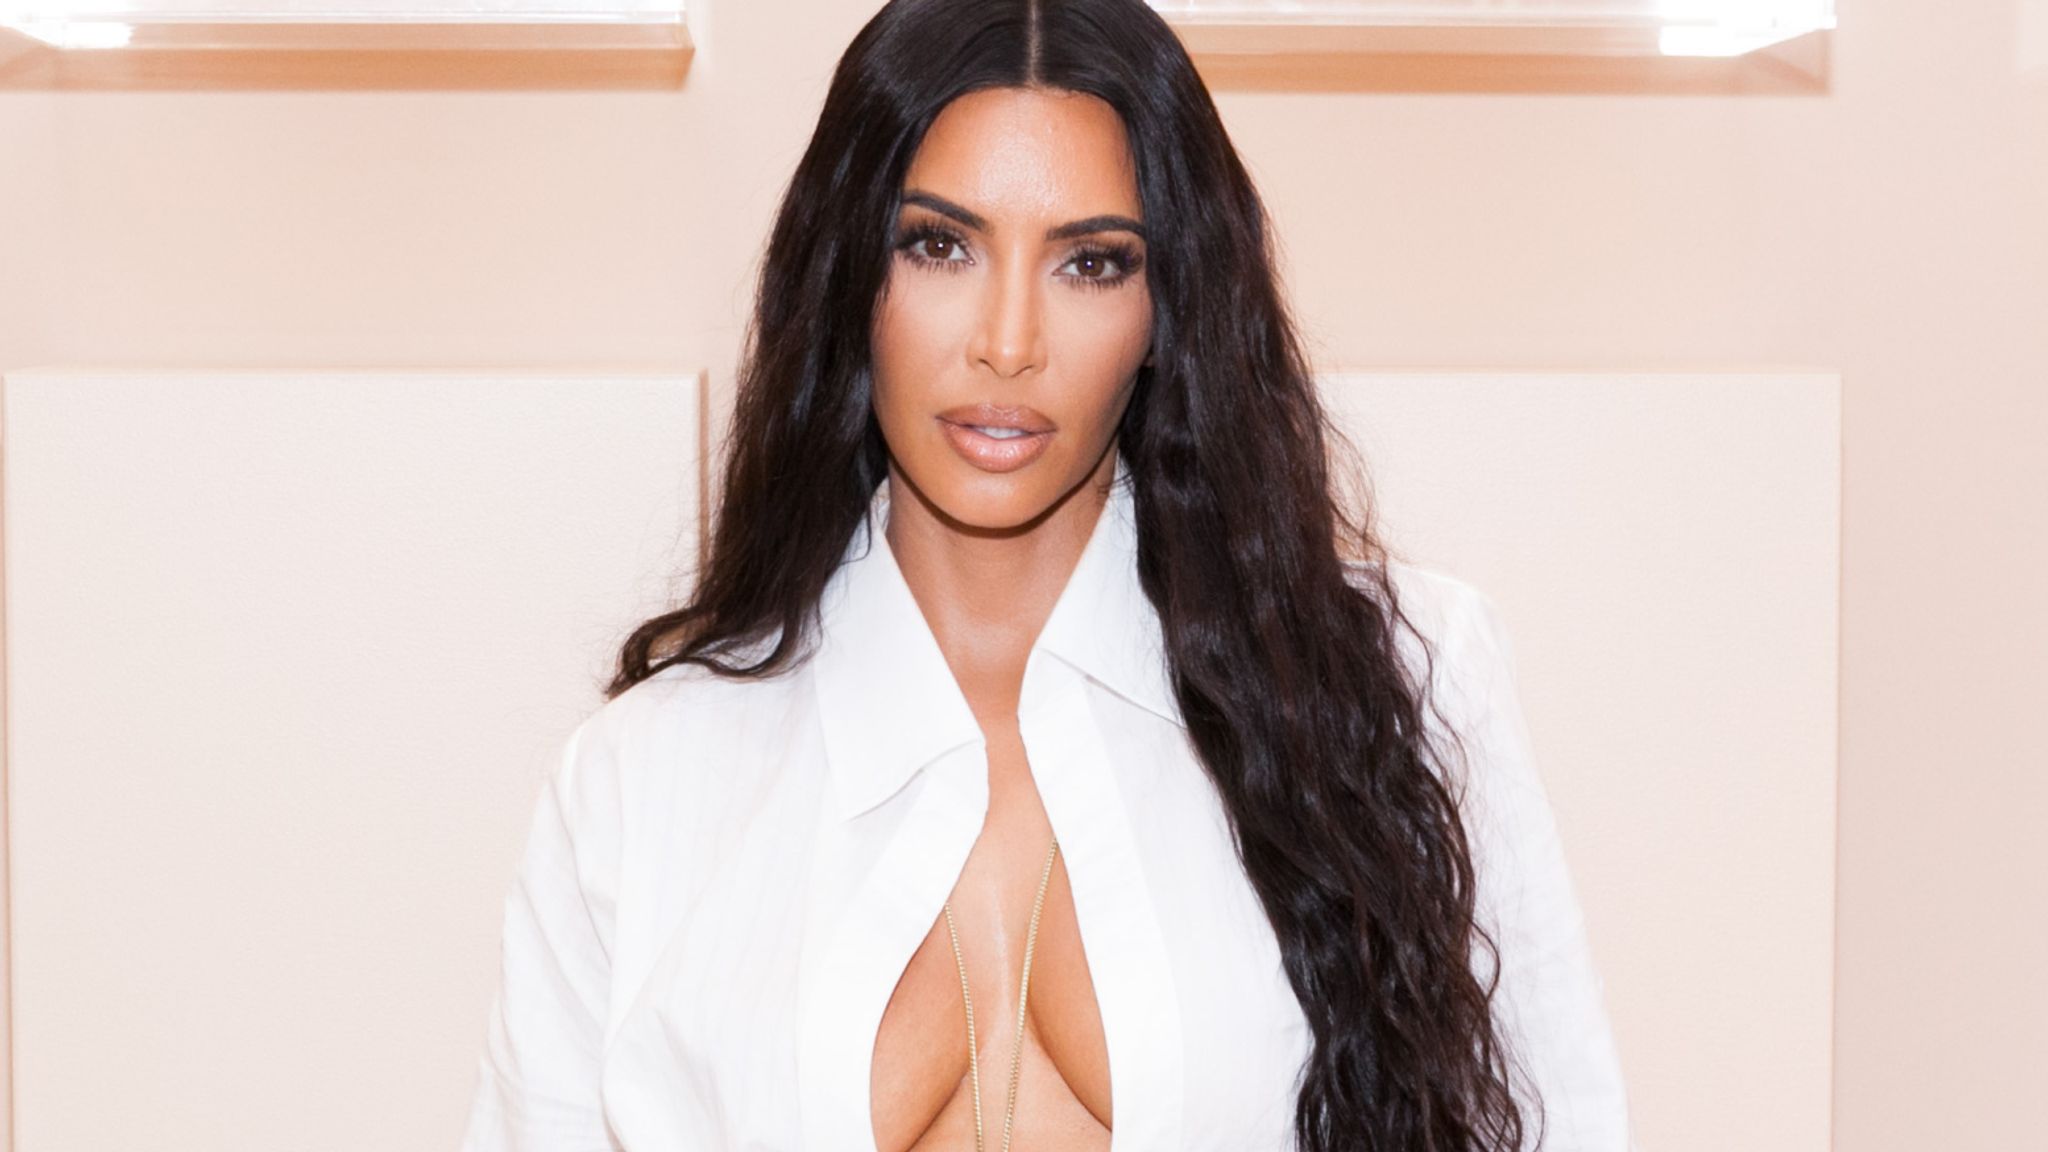 Ekspozoi linjat trupore perfekte, Kim Kardashian zbulon sekretet e dietës së saj